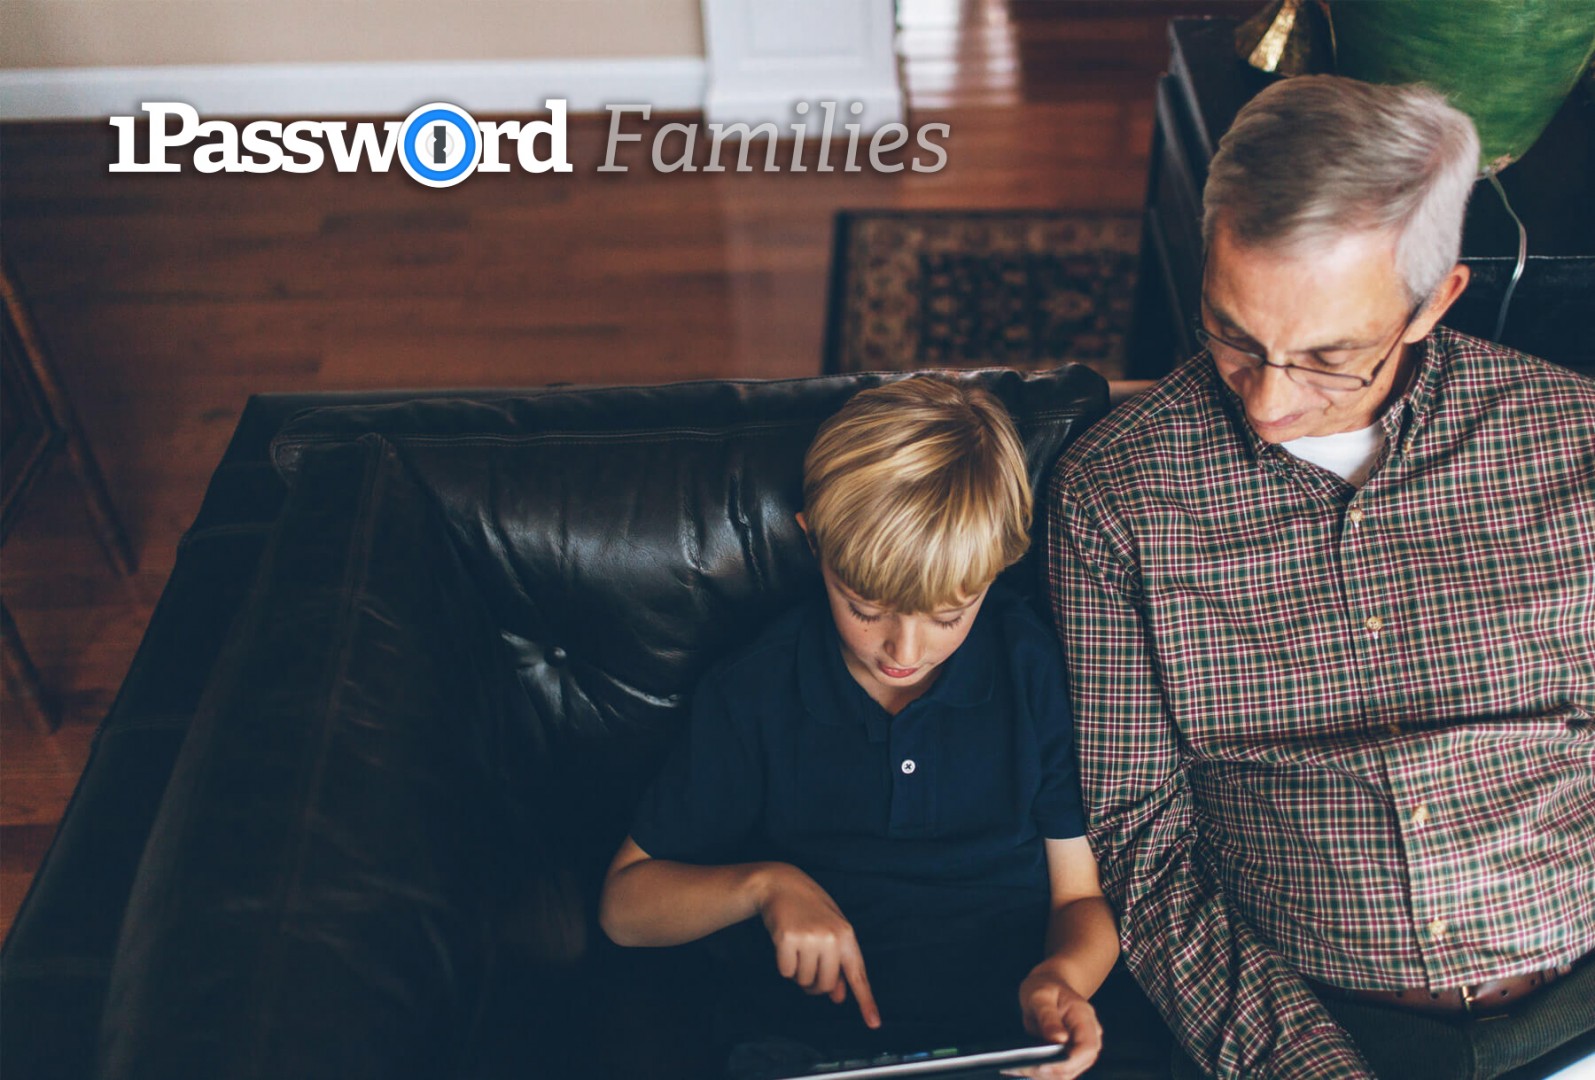 1Password ออกแพลนสำหรับครอบครัว ใช้ 5 คน แค่เดือนละ $5